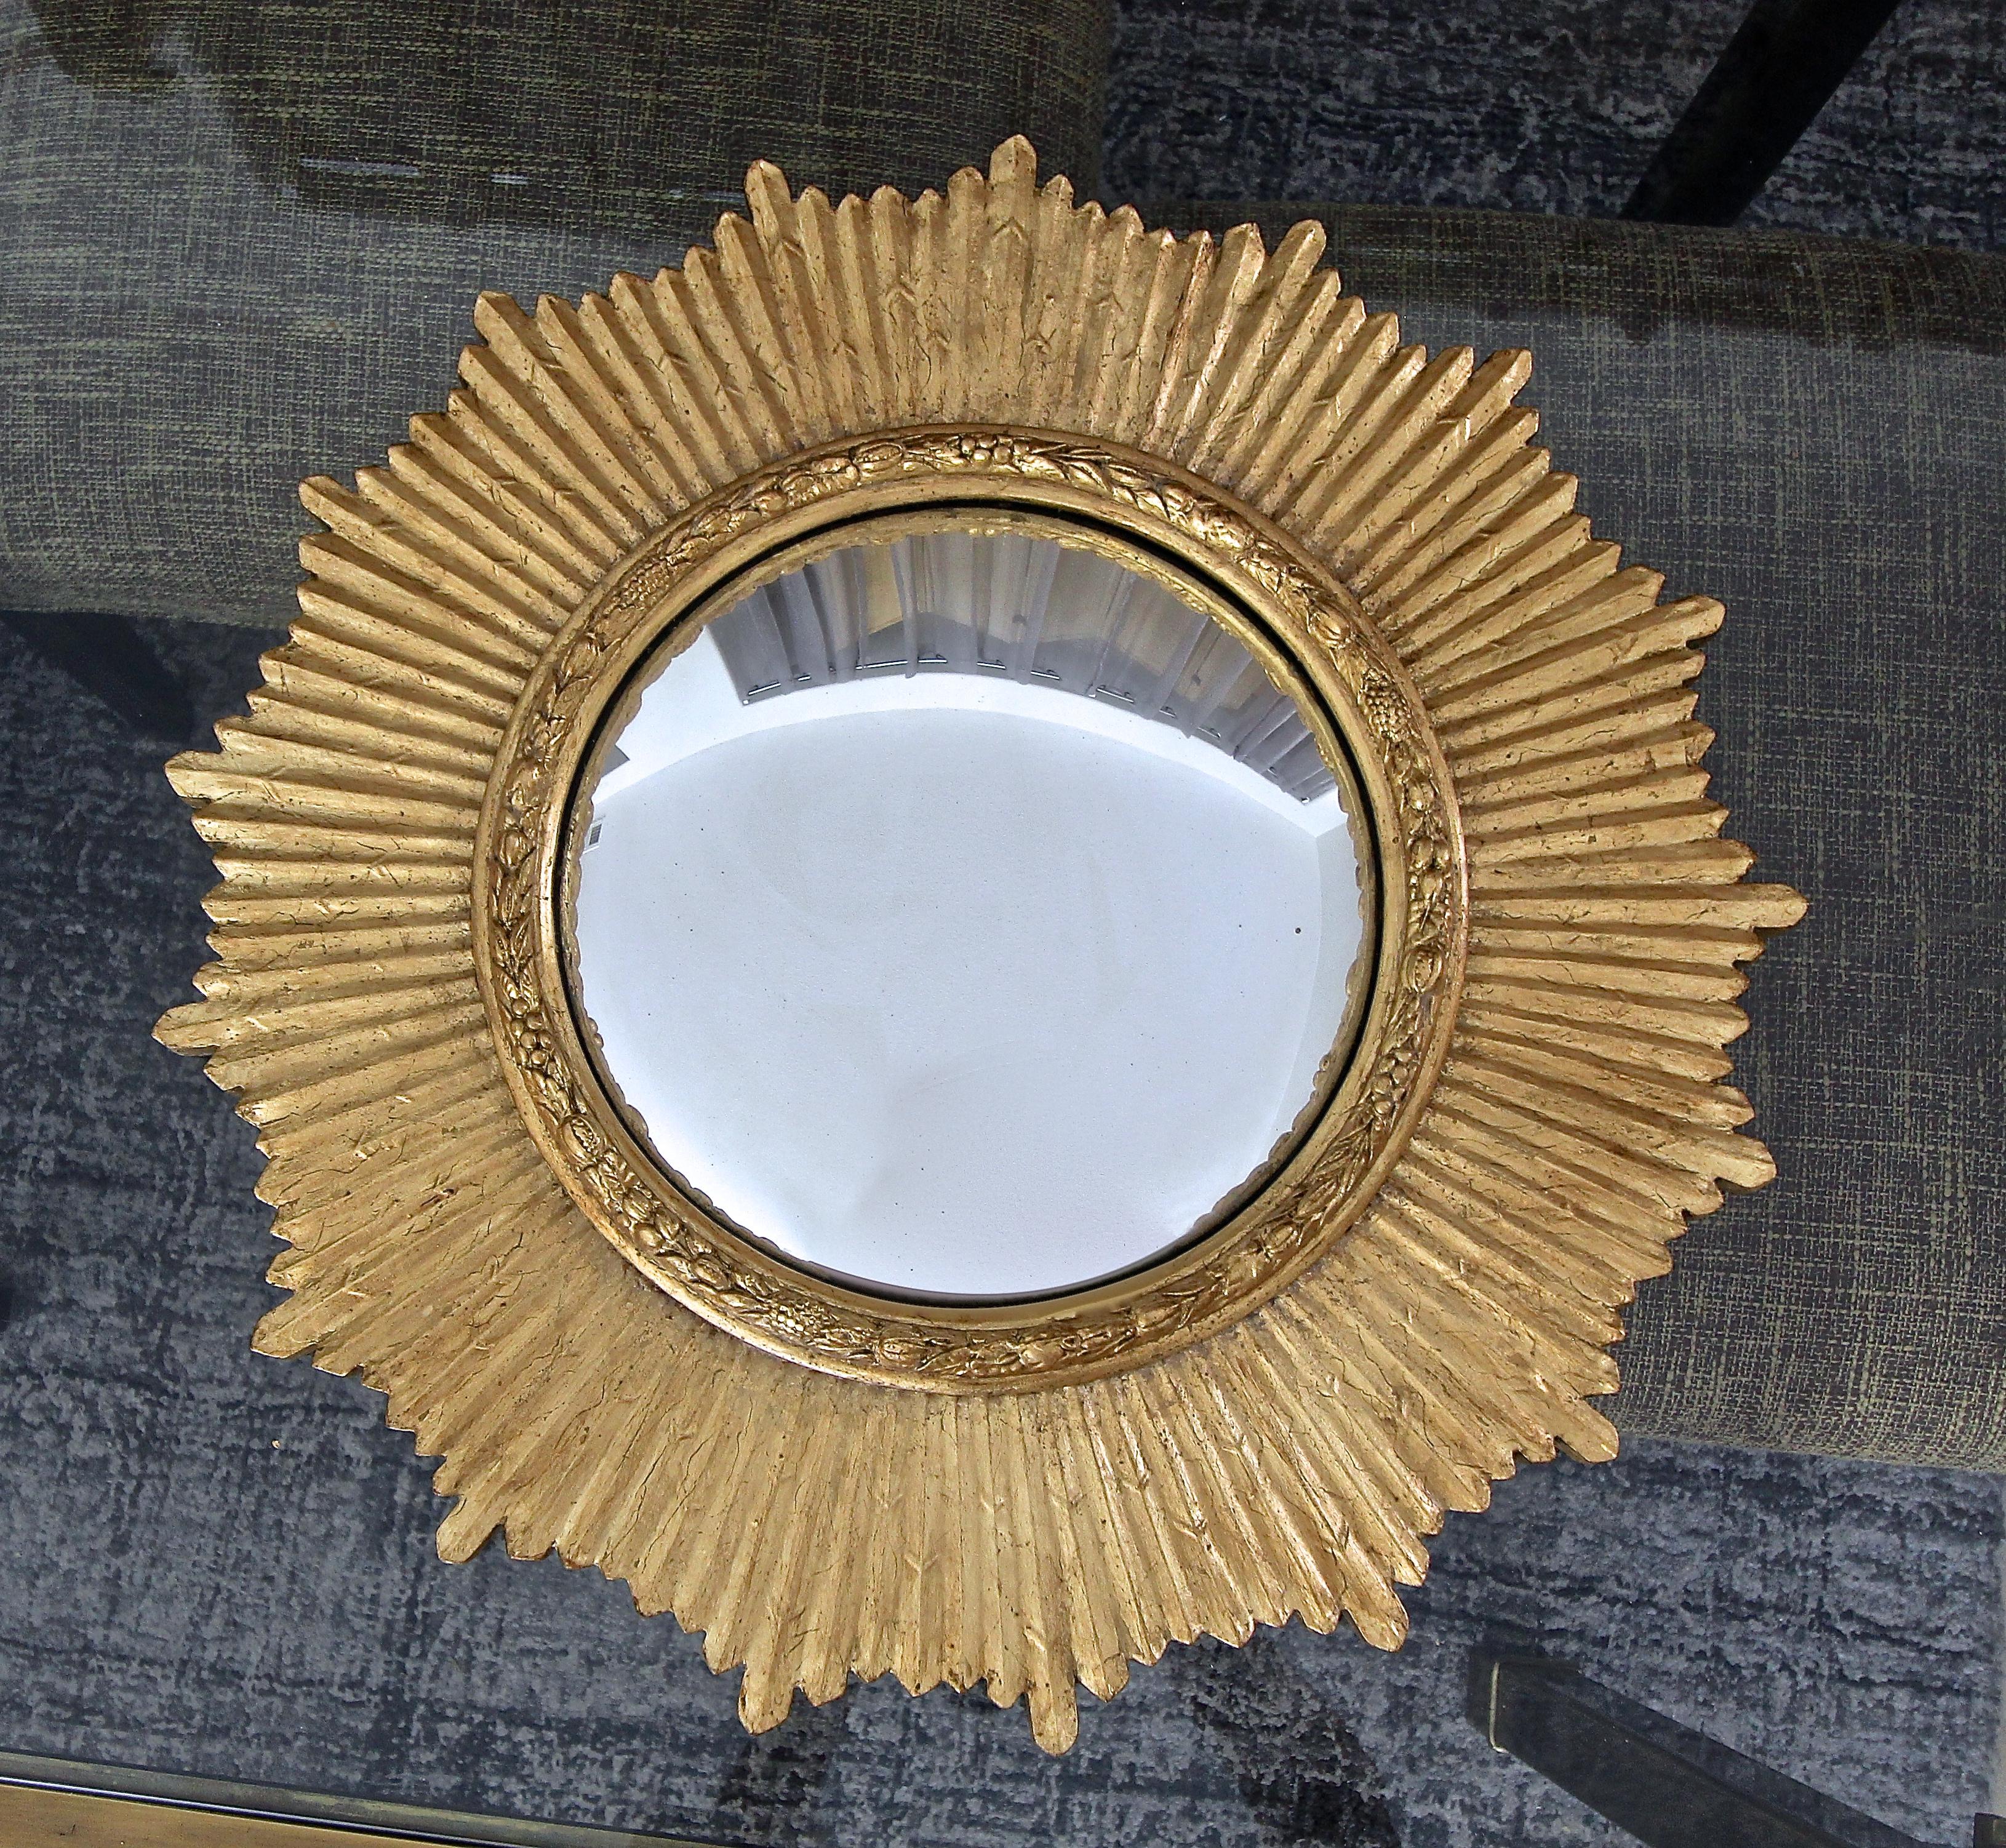 Round giltwood sunburst or starburst wall mirror with convex mirror.